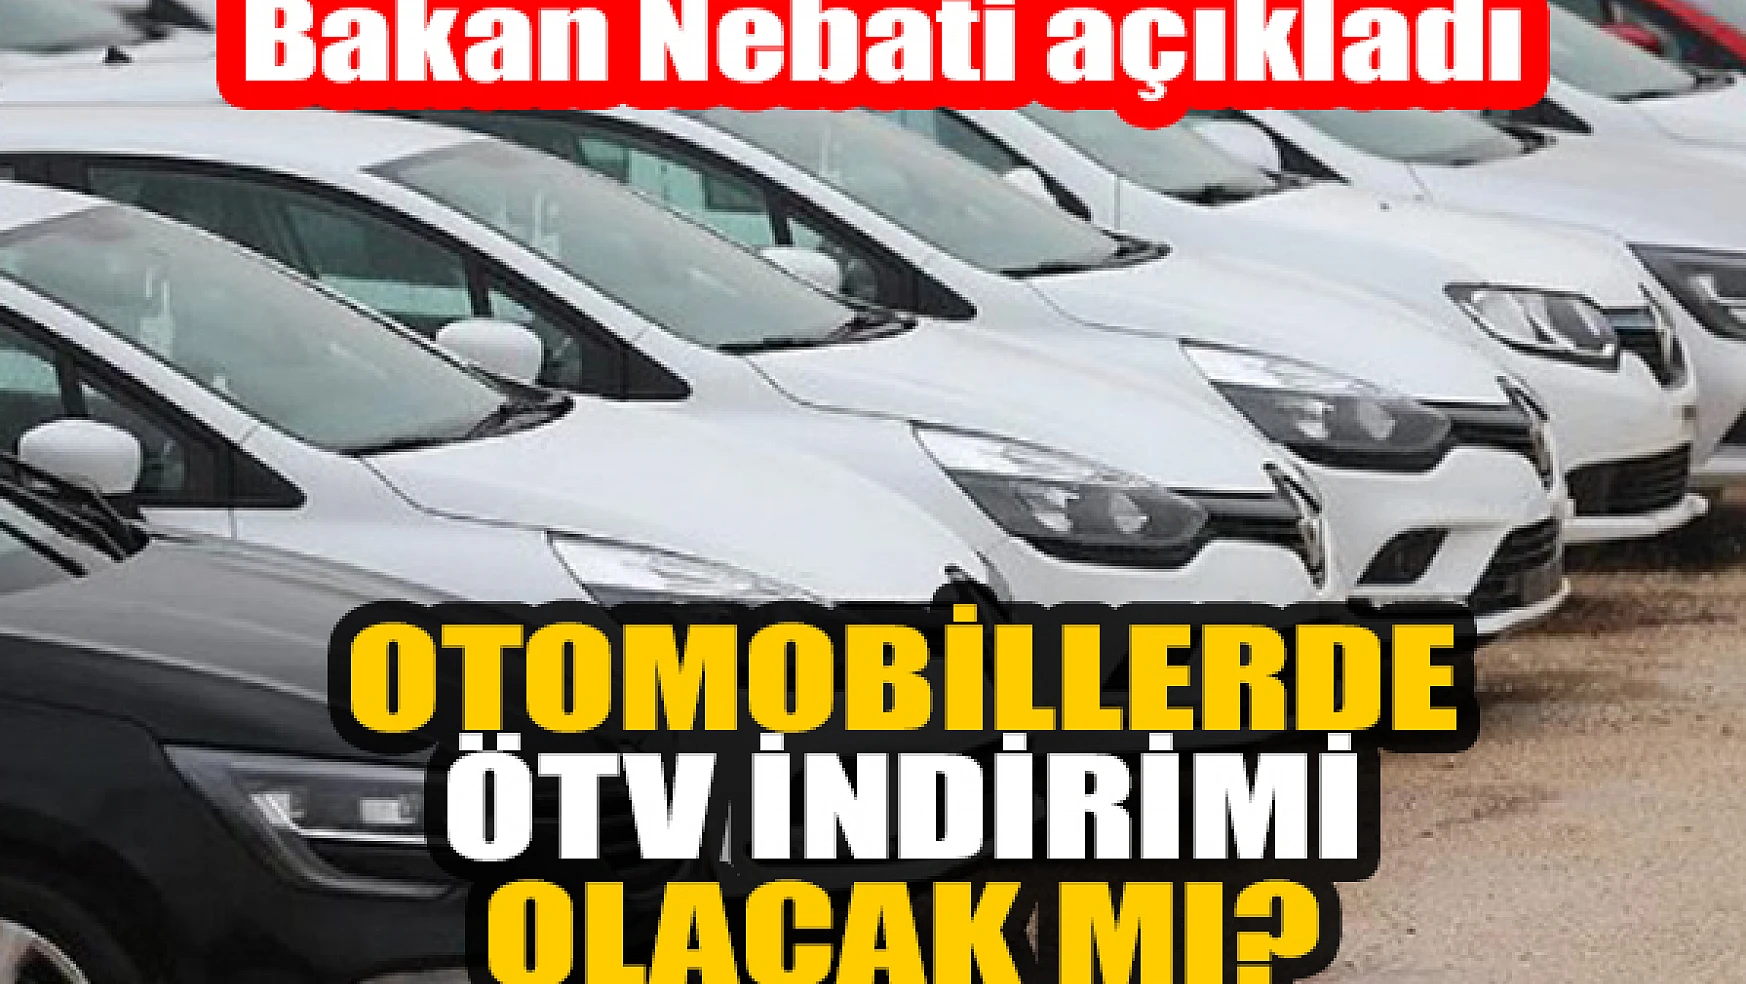 Otomobillerde ÖTV indirimi olacak mı? Bakan Nebati açıkladı